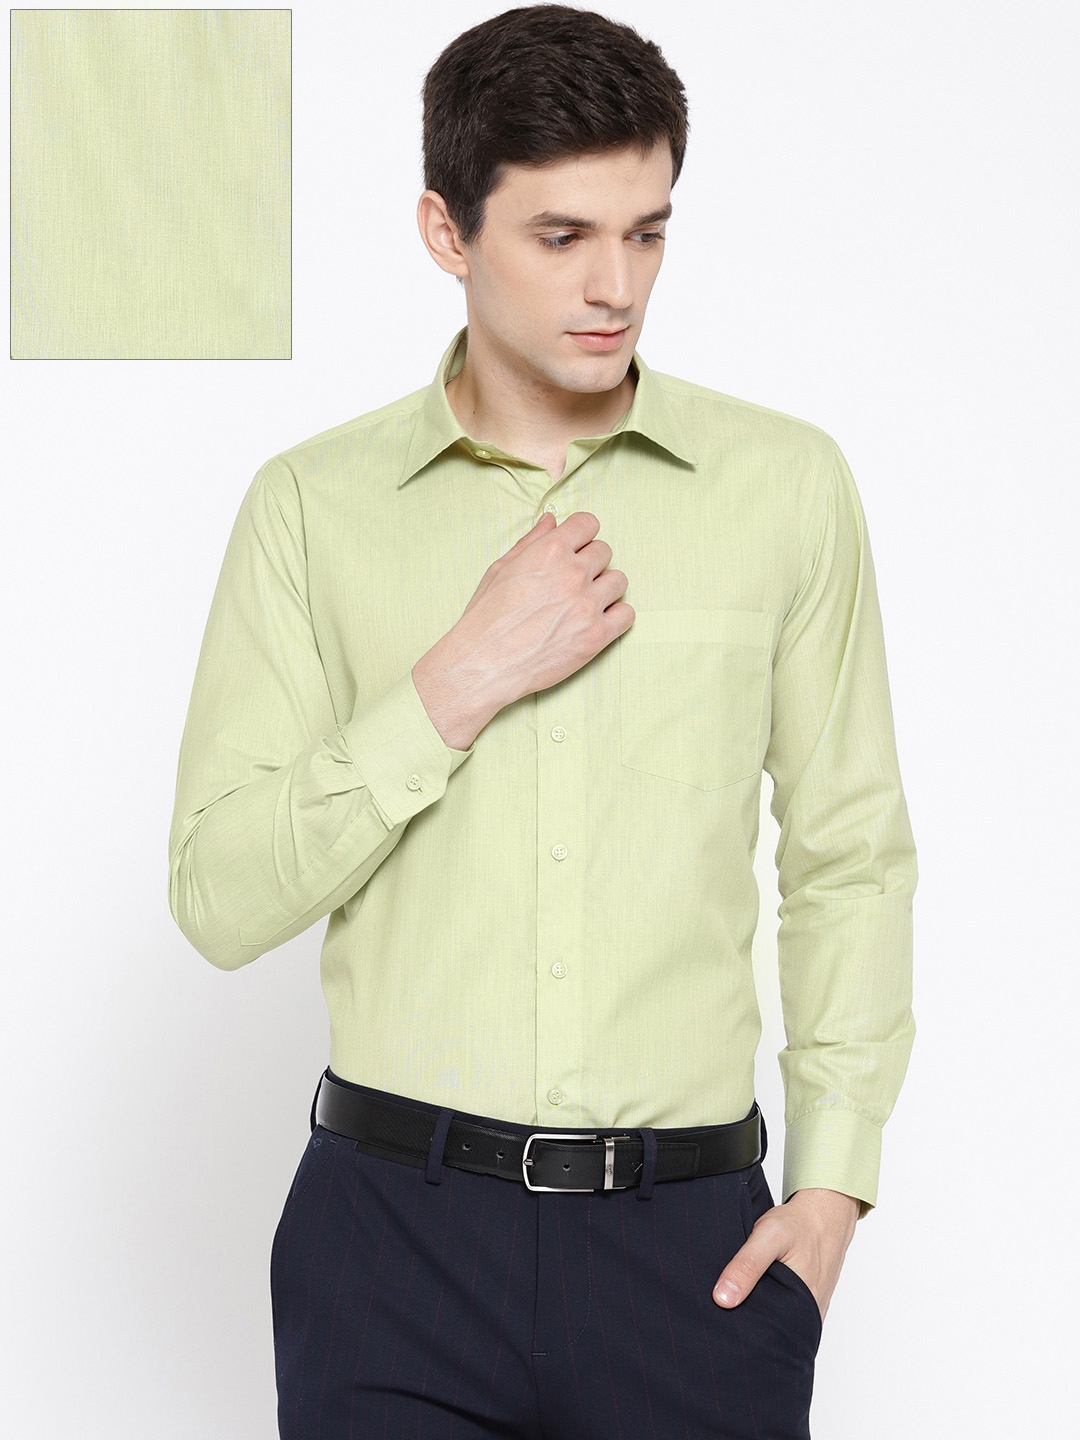 Buy DENNISON Men Lime Green Comfort Fit Solid Formal Shirt ...